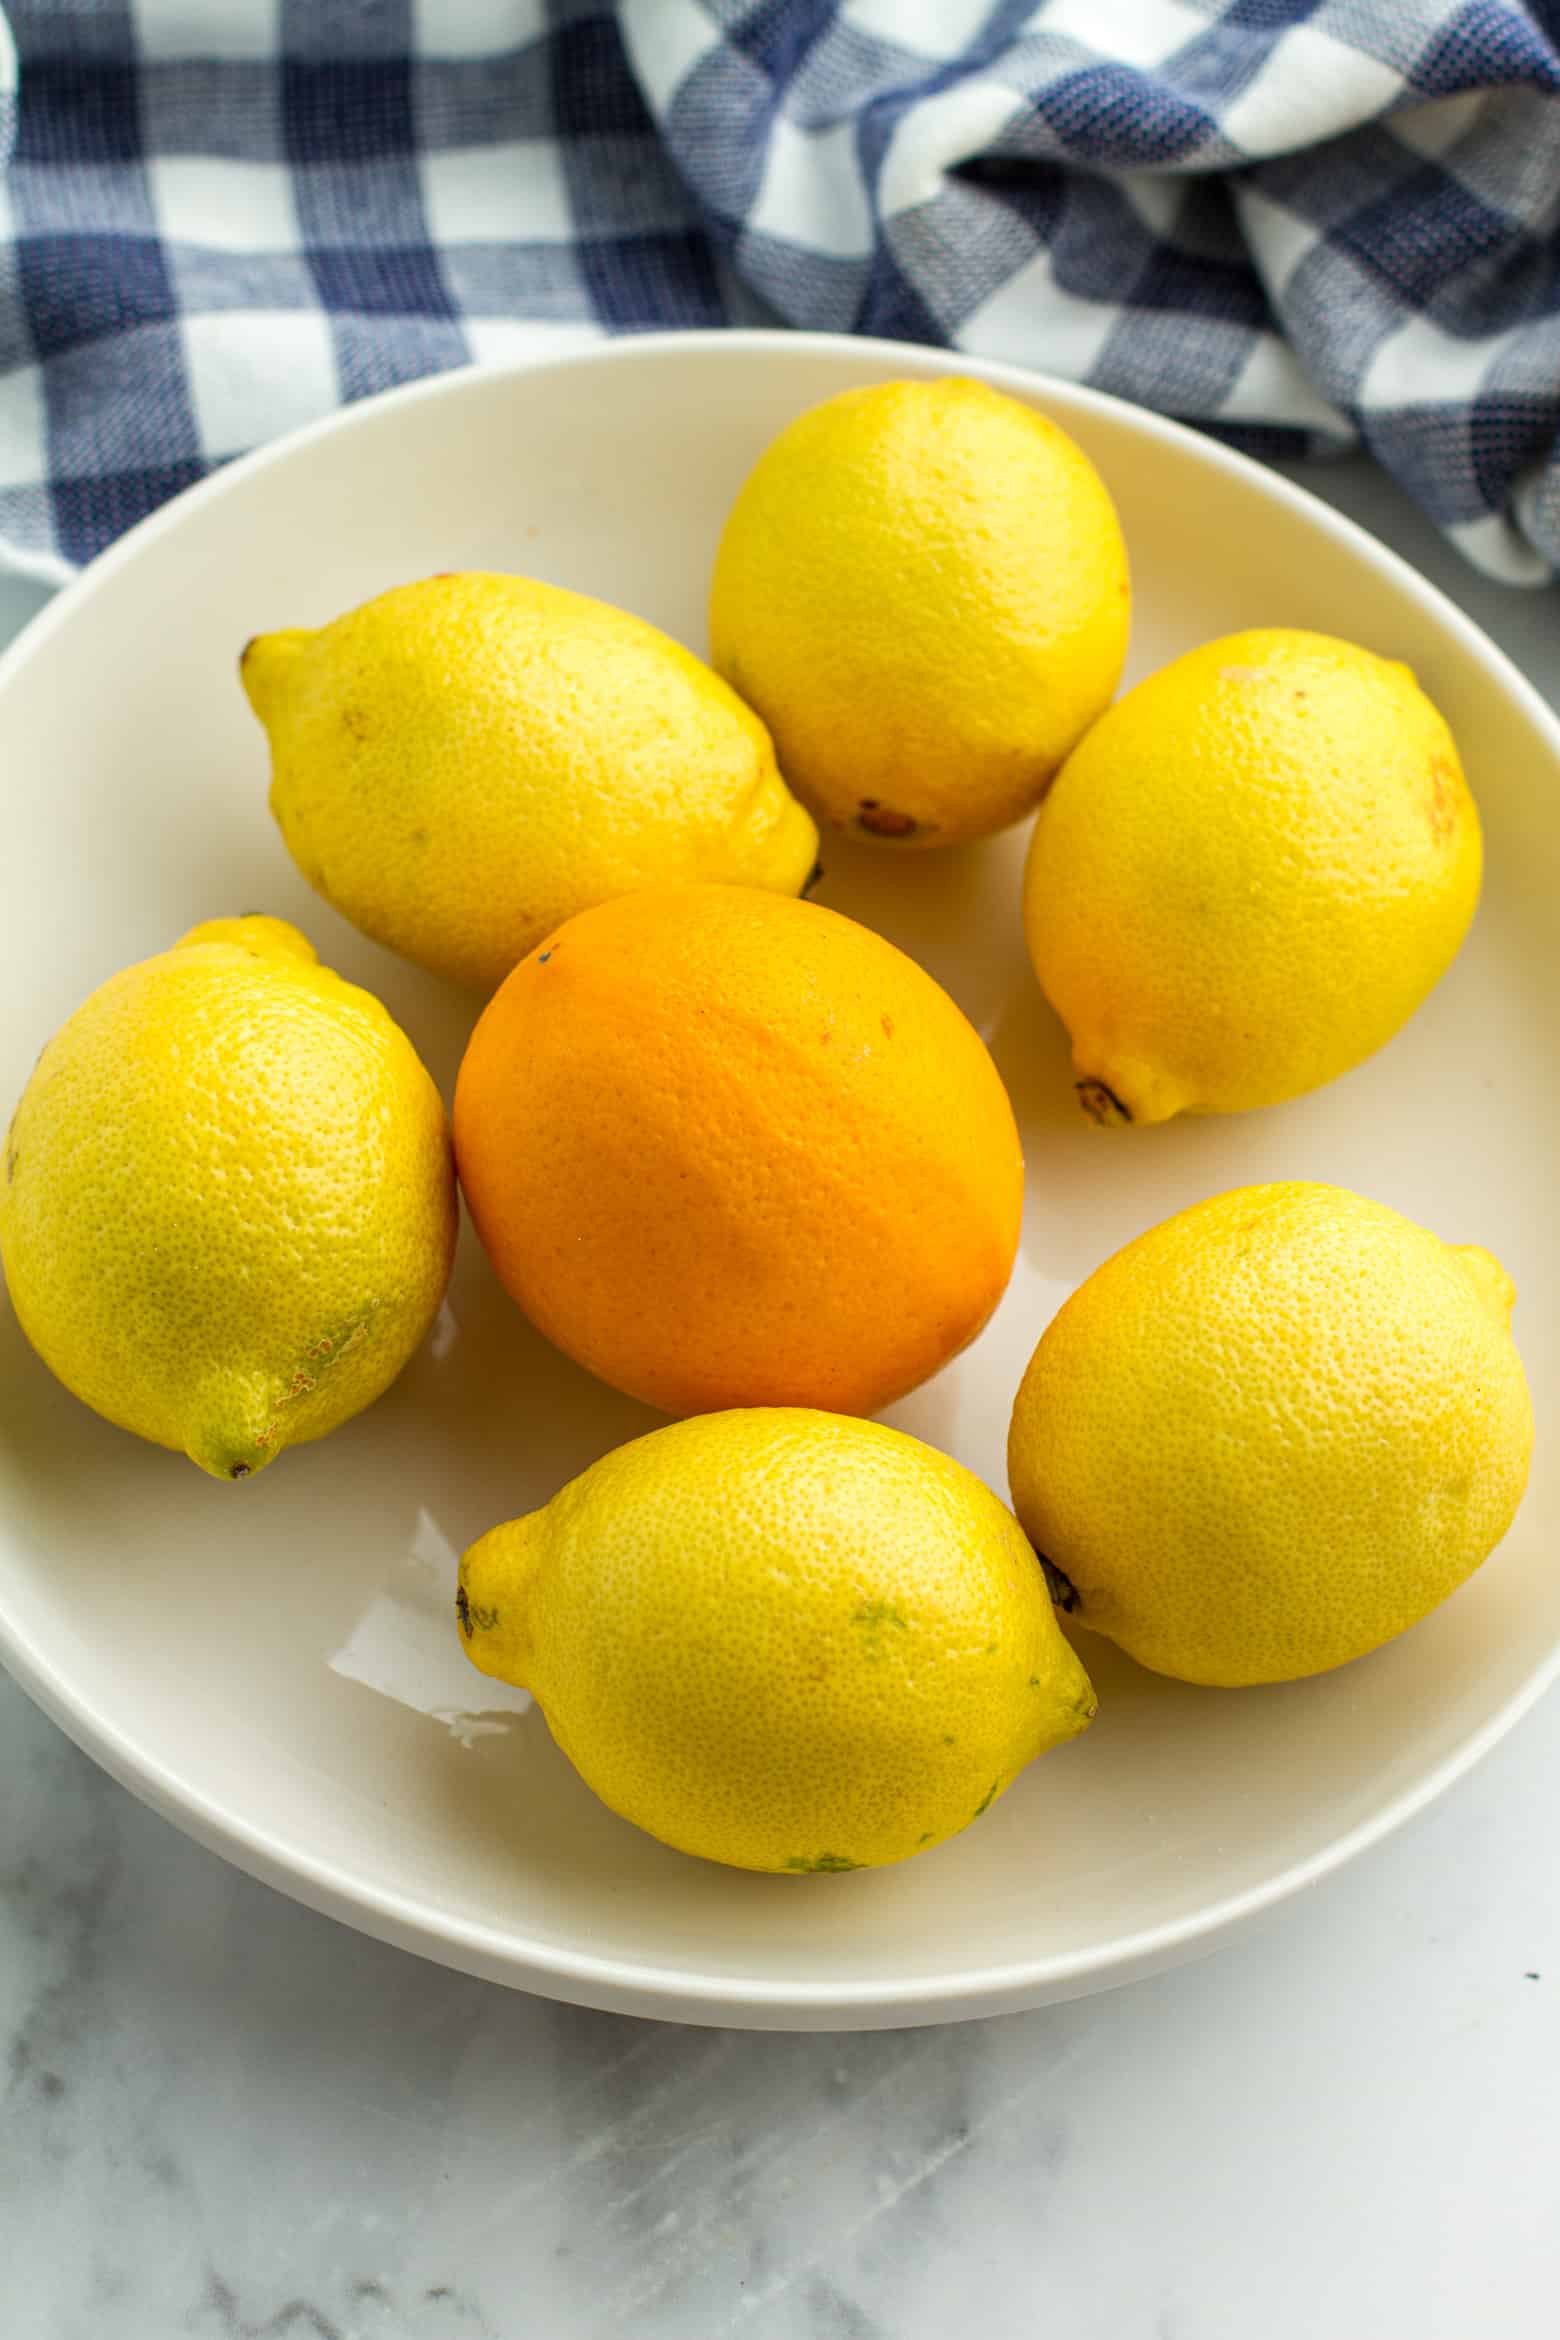 A meyer lemon and regular lemons in a bowl.